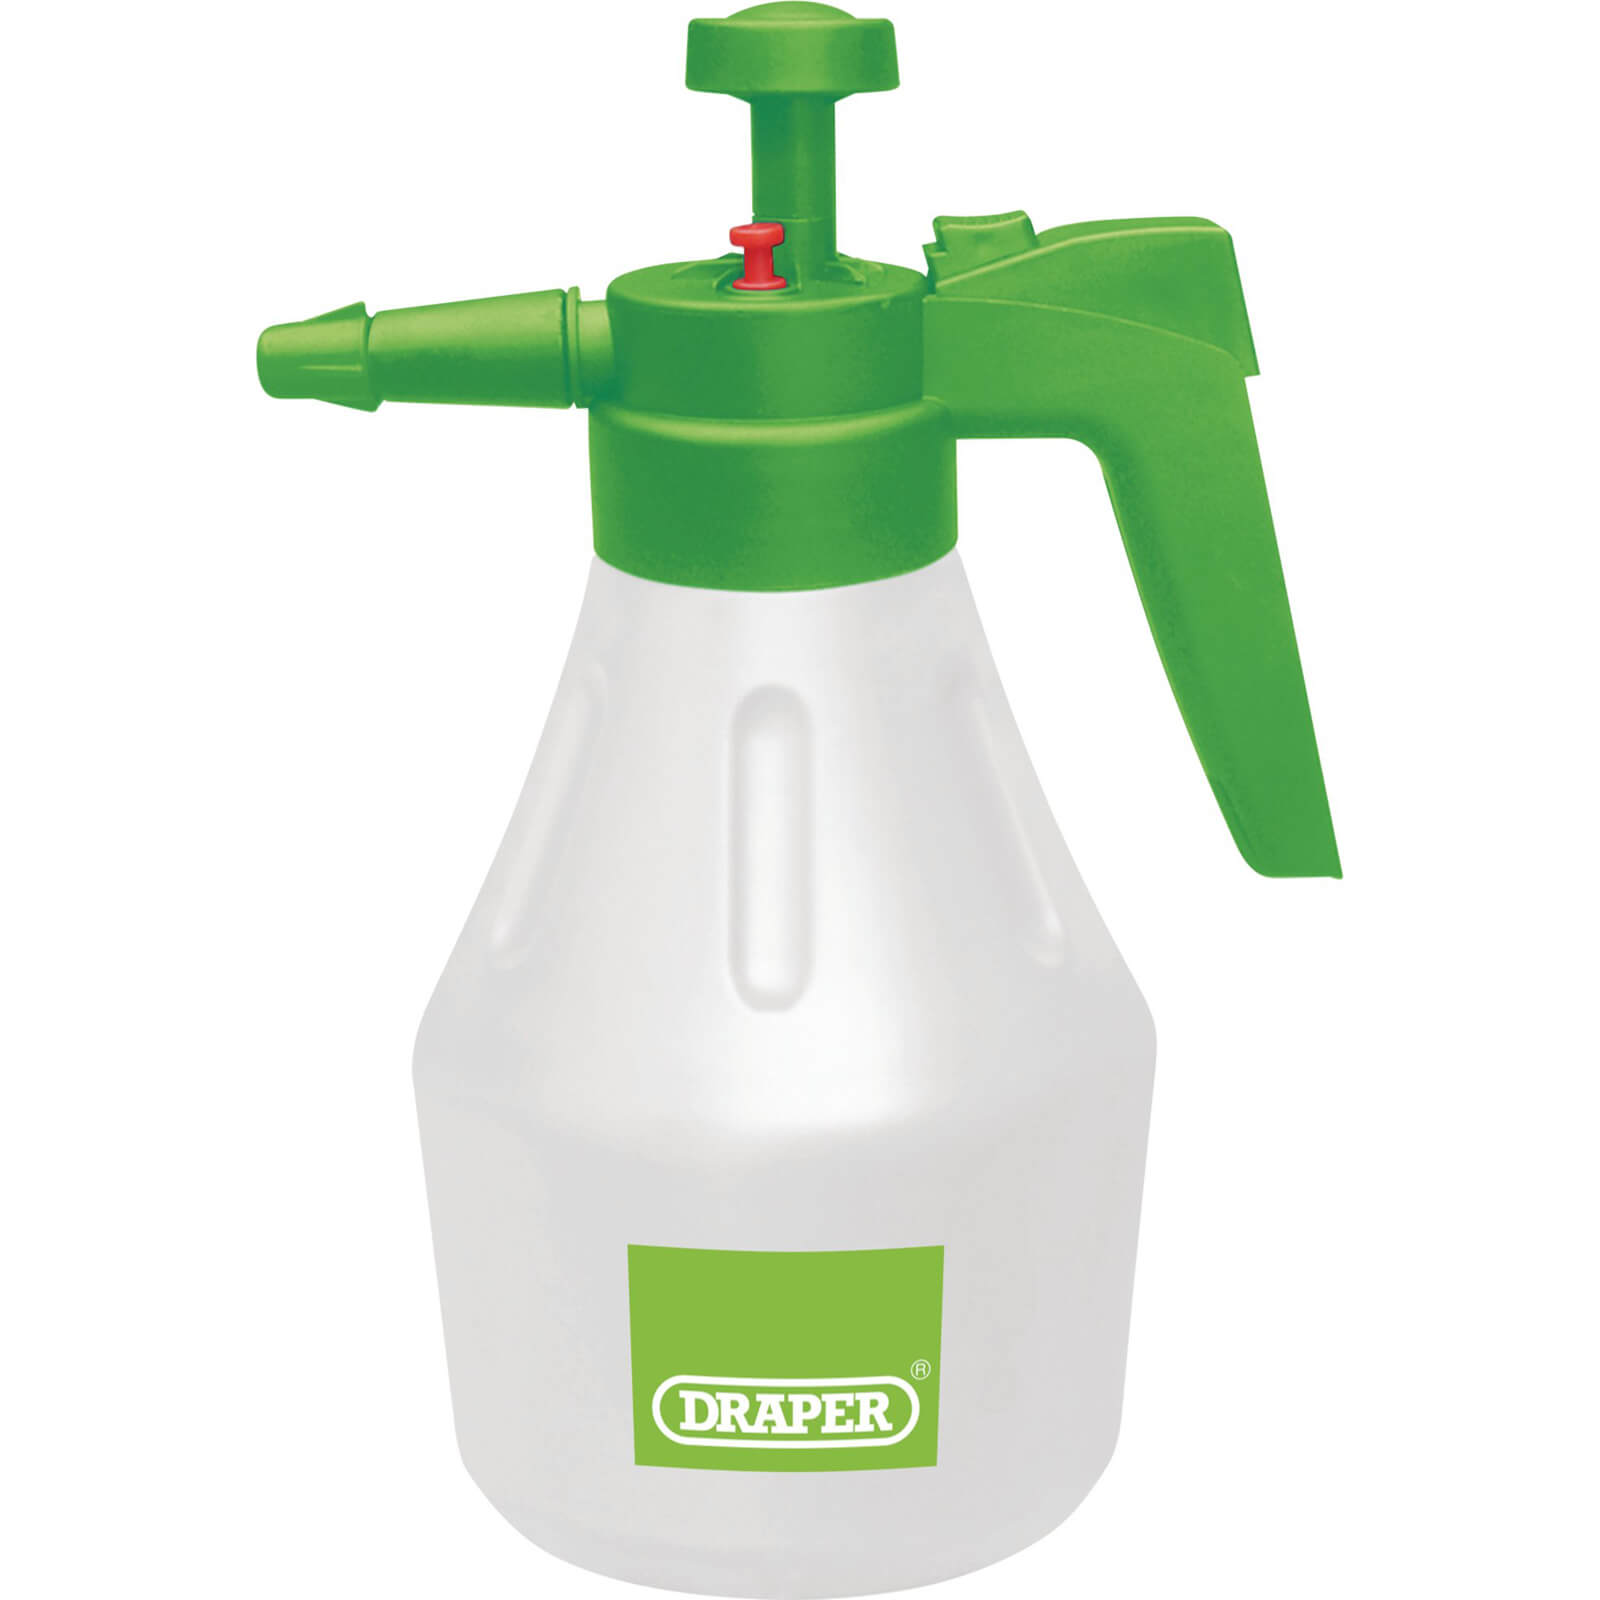 Image of Draper Expert Handheld Pressure Sprayer 1.8l